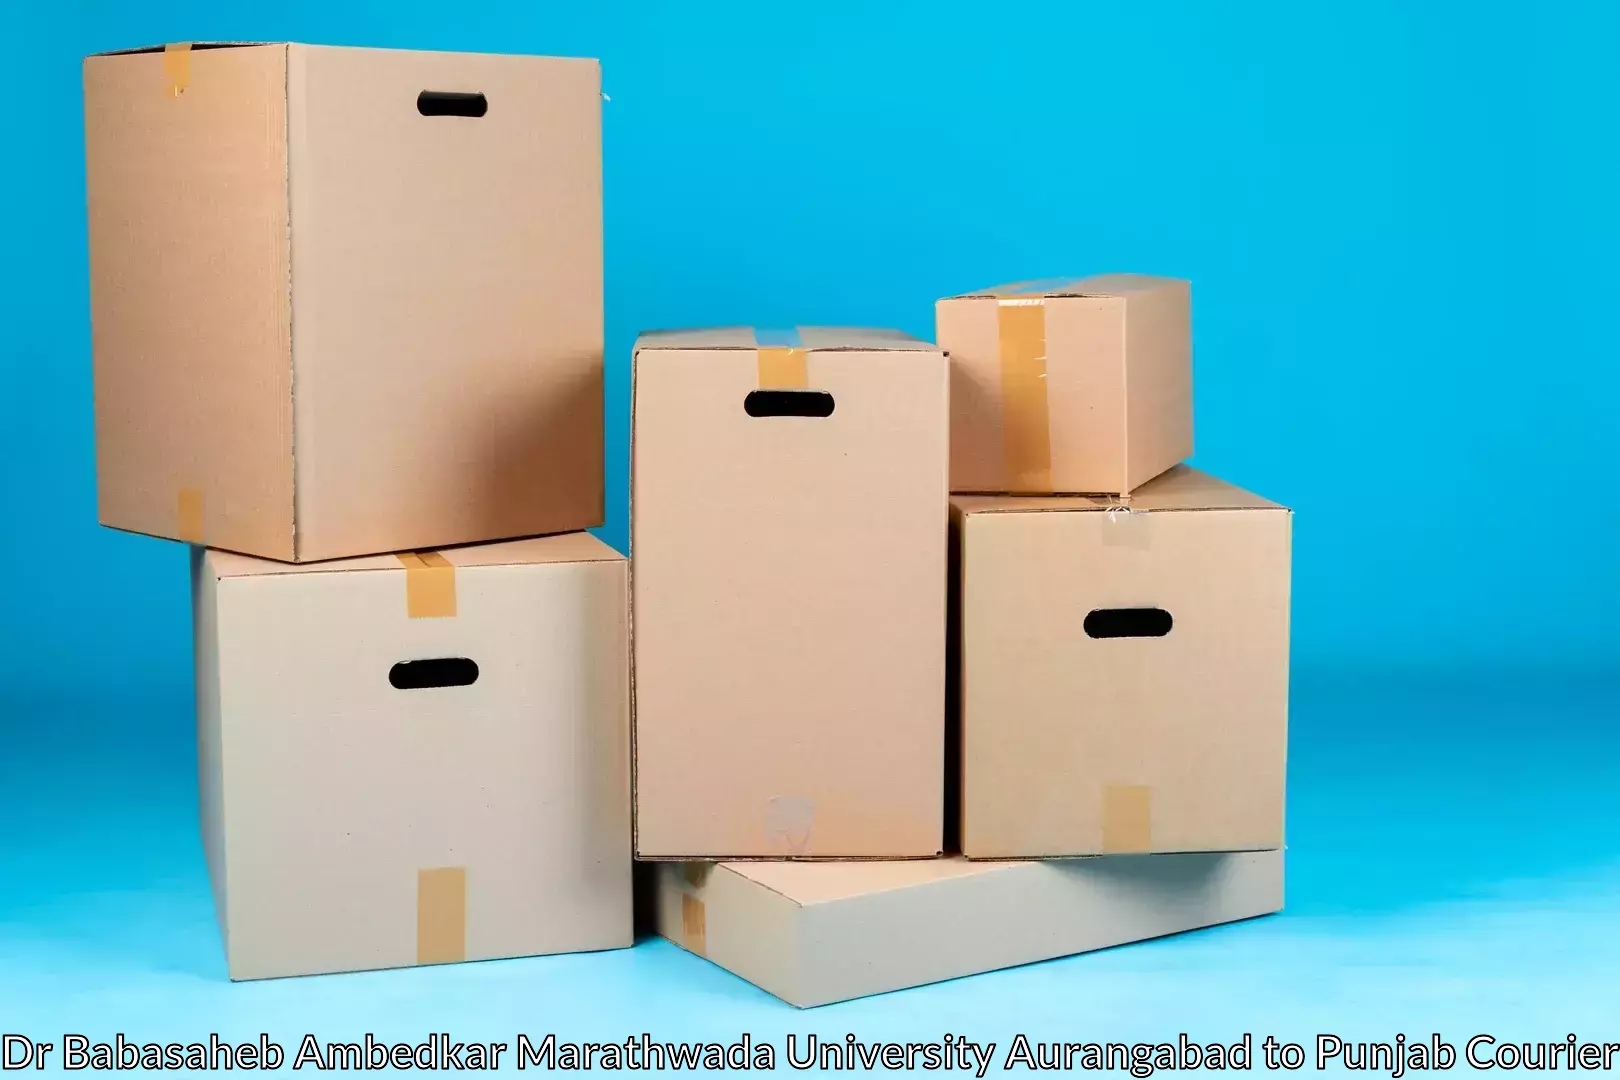 Trusted furniture movers Dr Babasaheb Ambedkar Marathwada University Aurangabad to Central University of Punjab Bathinda